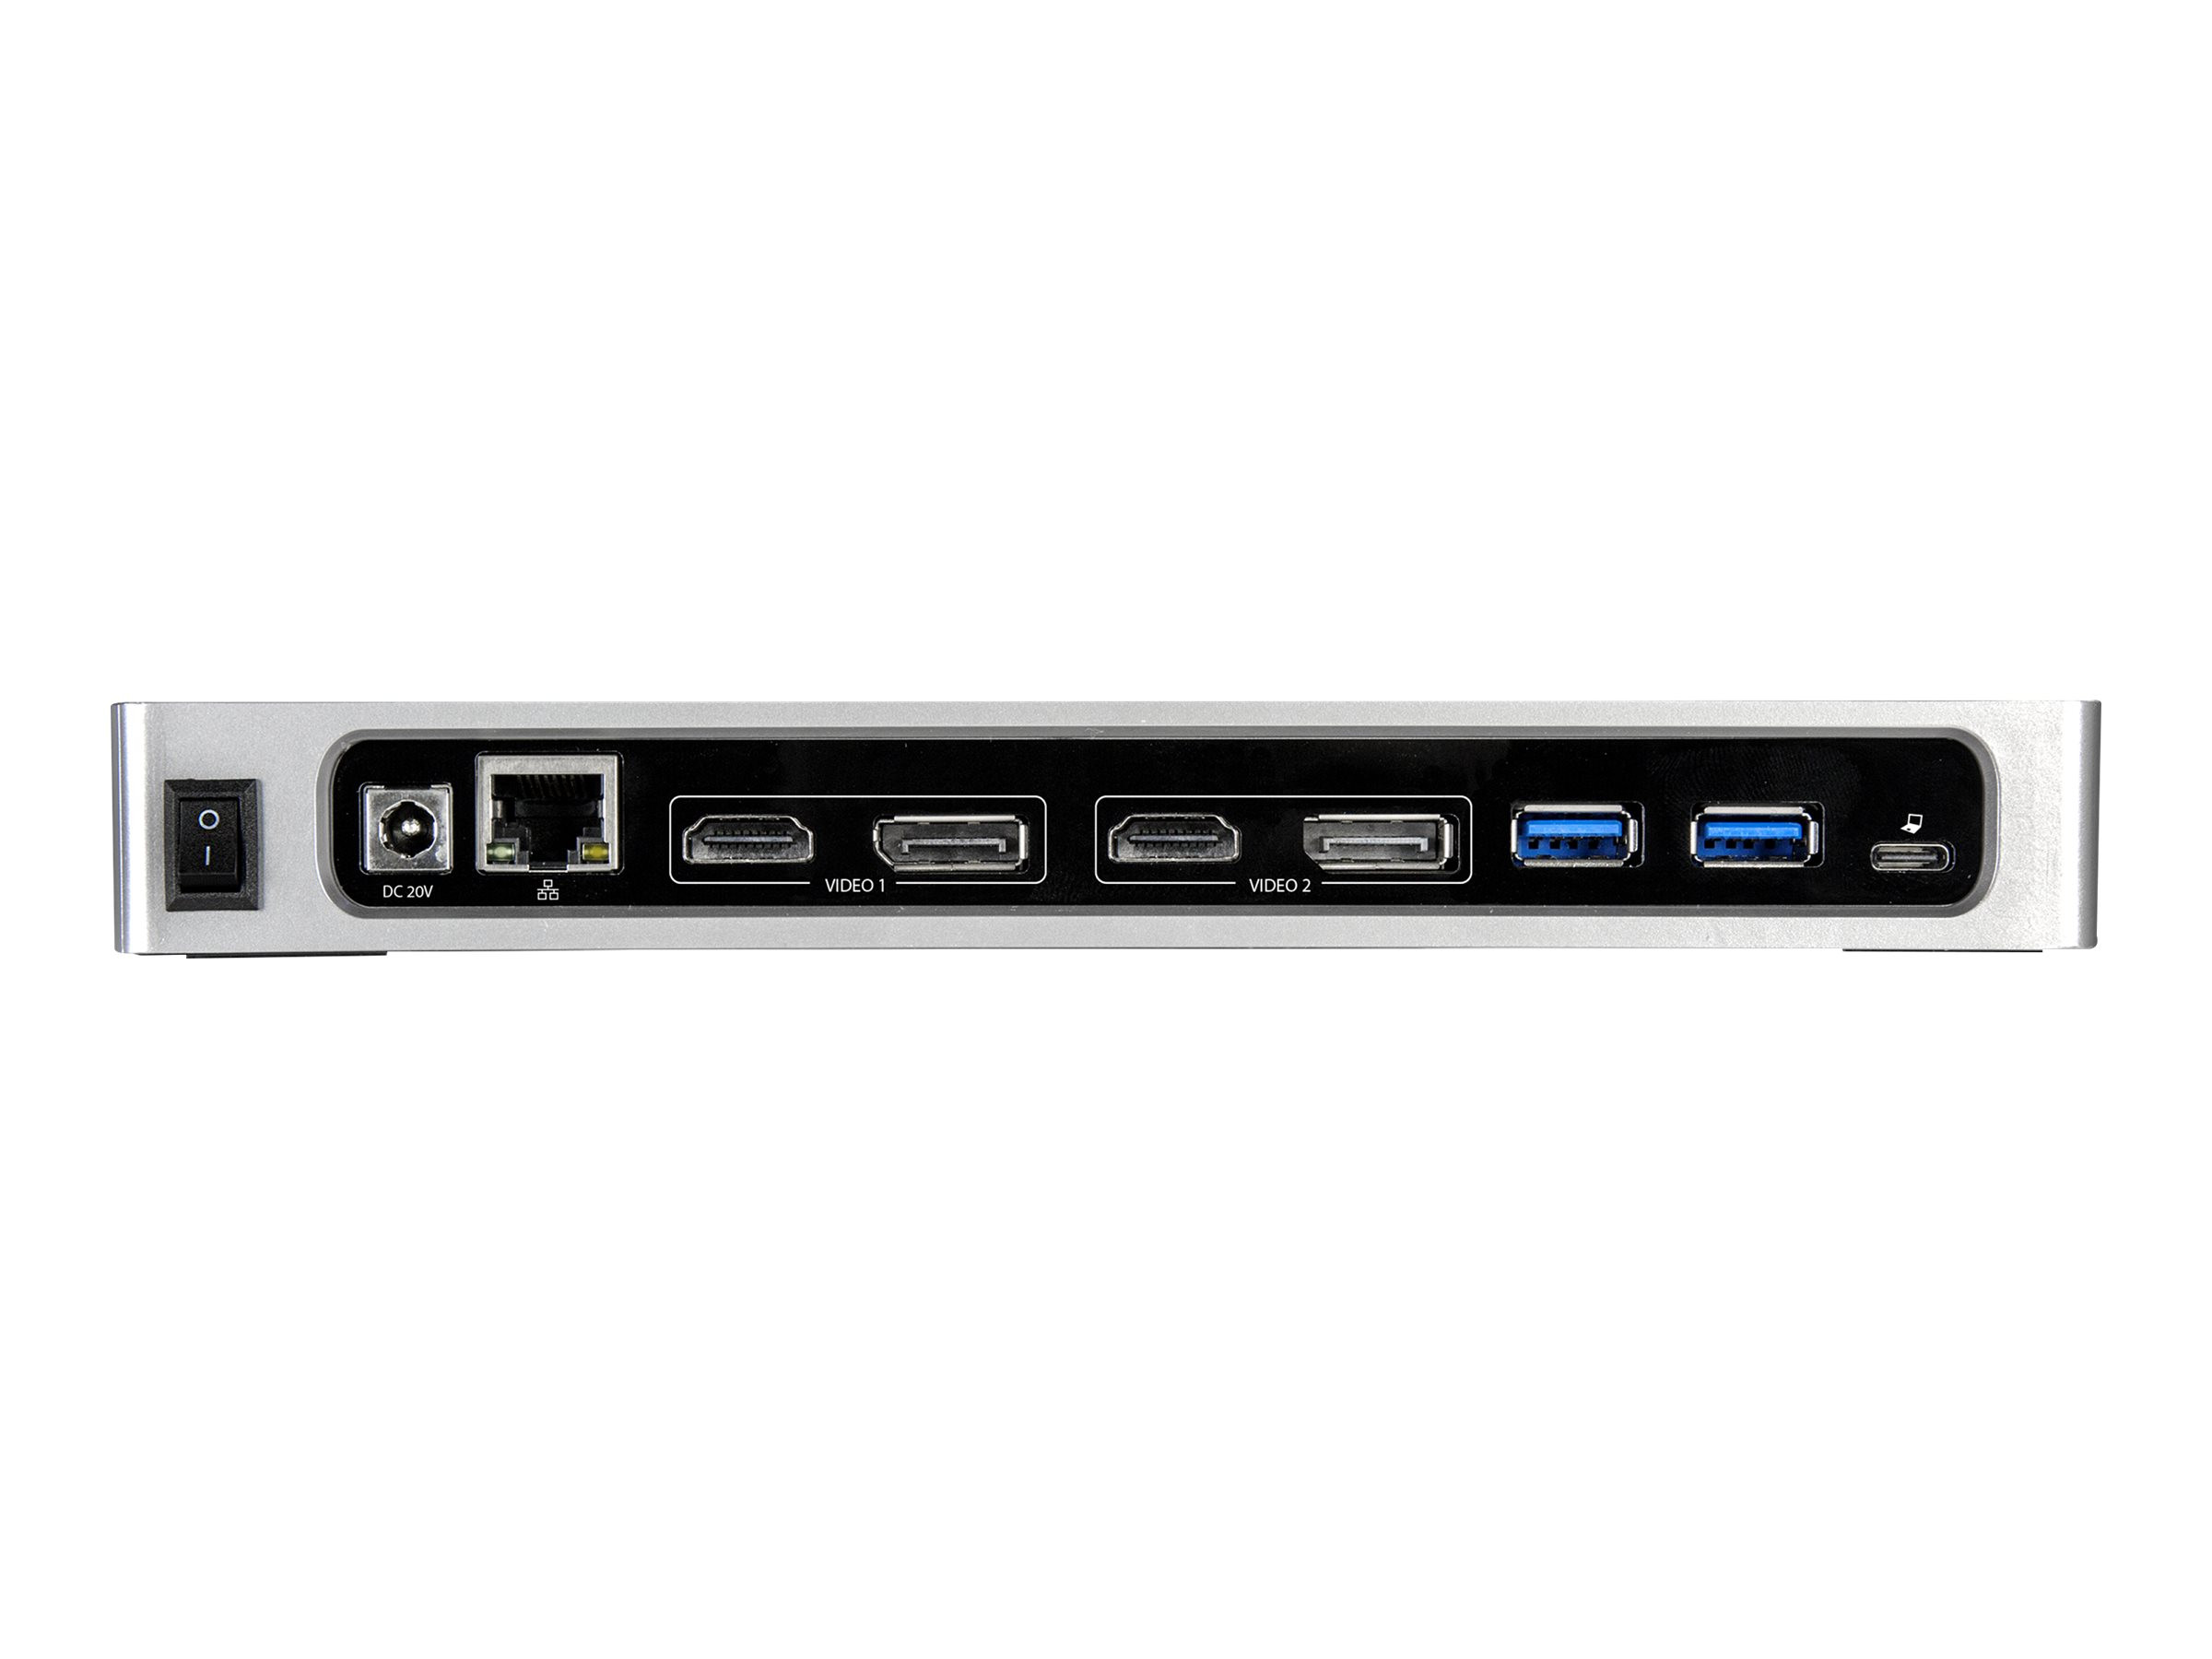 StarTech USB-C Dockingstation | Dual-4K HDMI, DP | USB 3.0 für Mac und Windows | ohne Netzteil | ohne Kabel